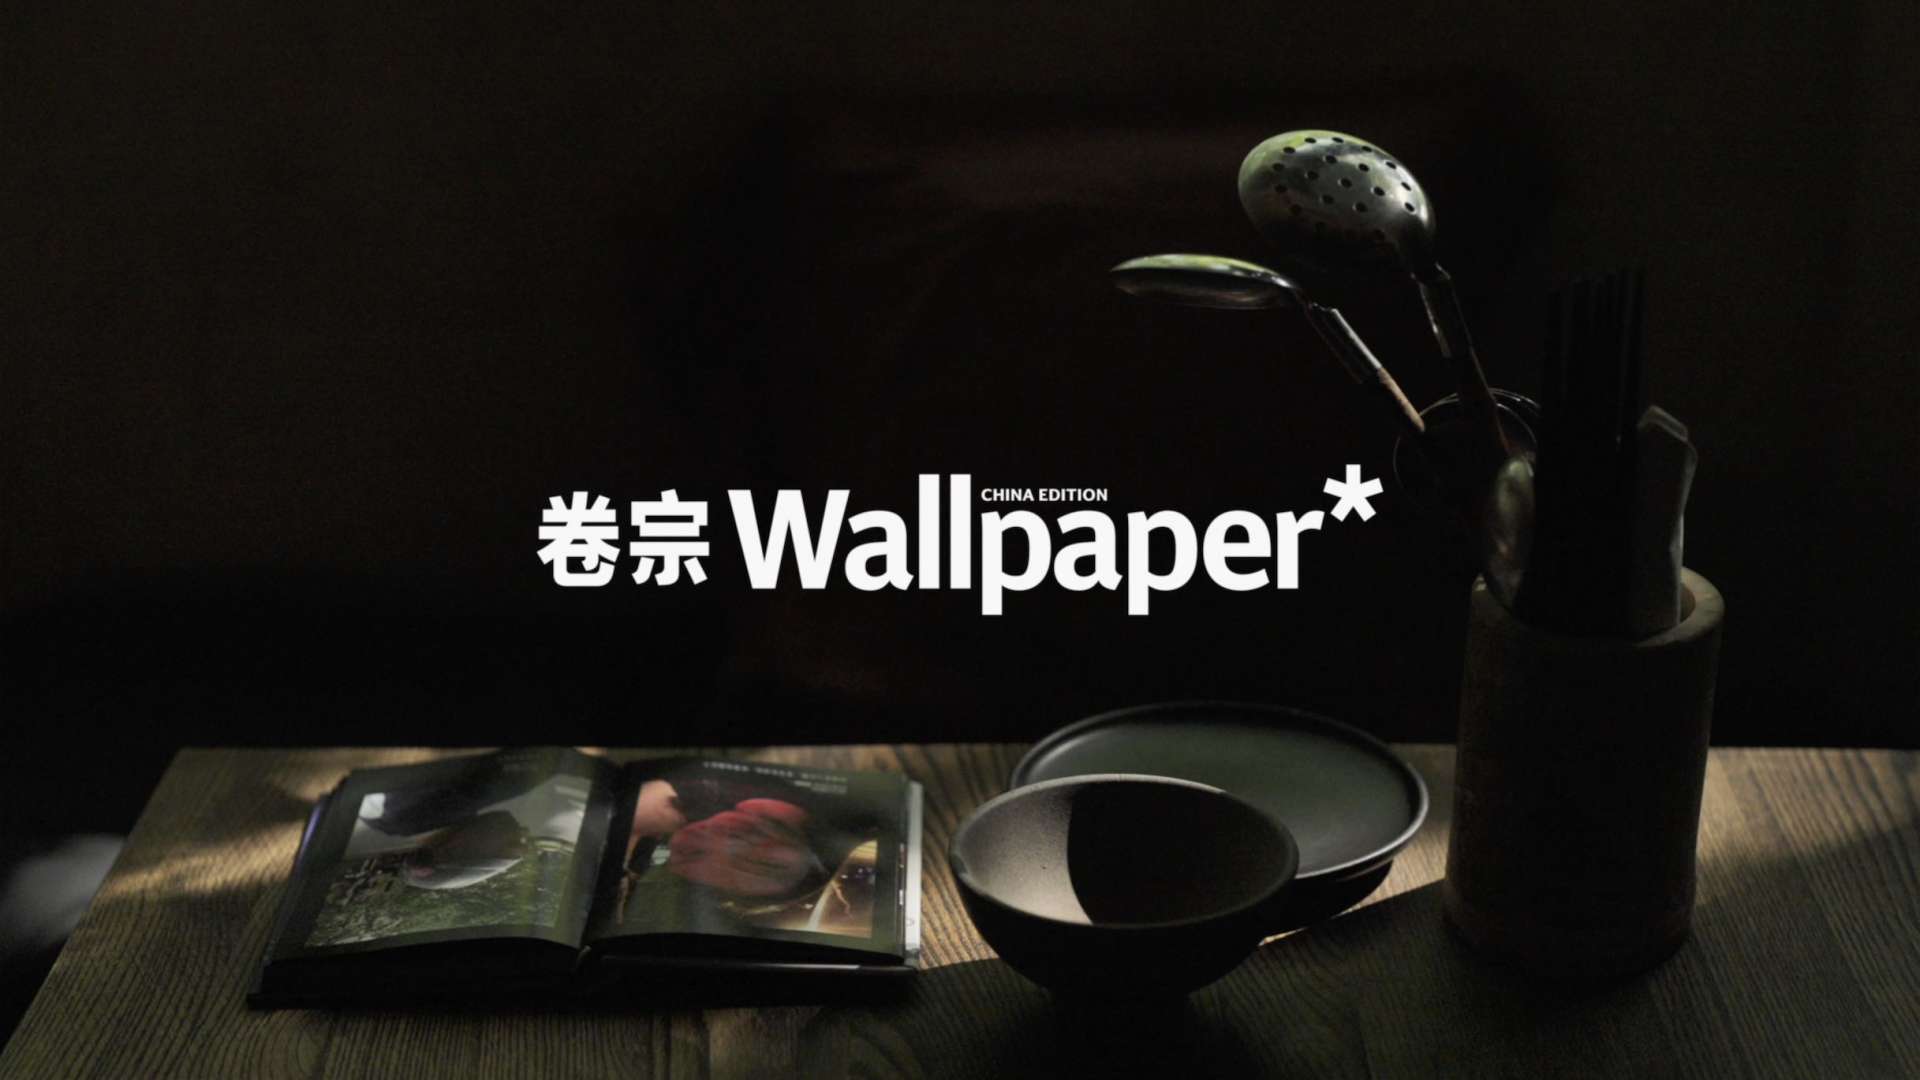 卷宗Wallpaper* 室室如意 2021国庆特辑 - 上海